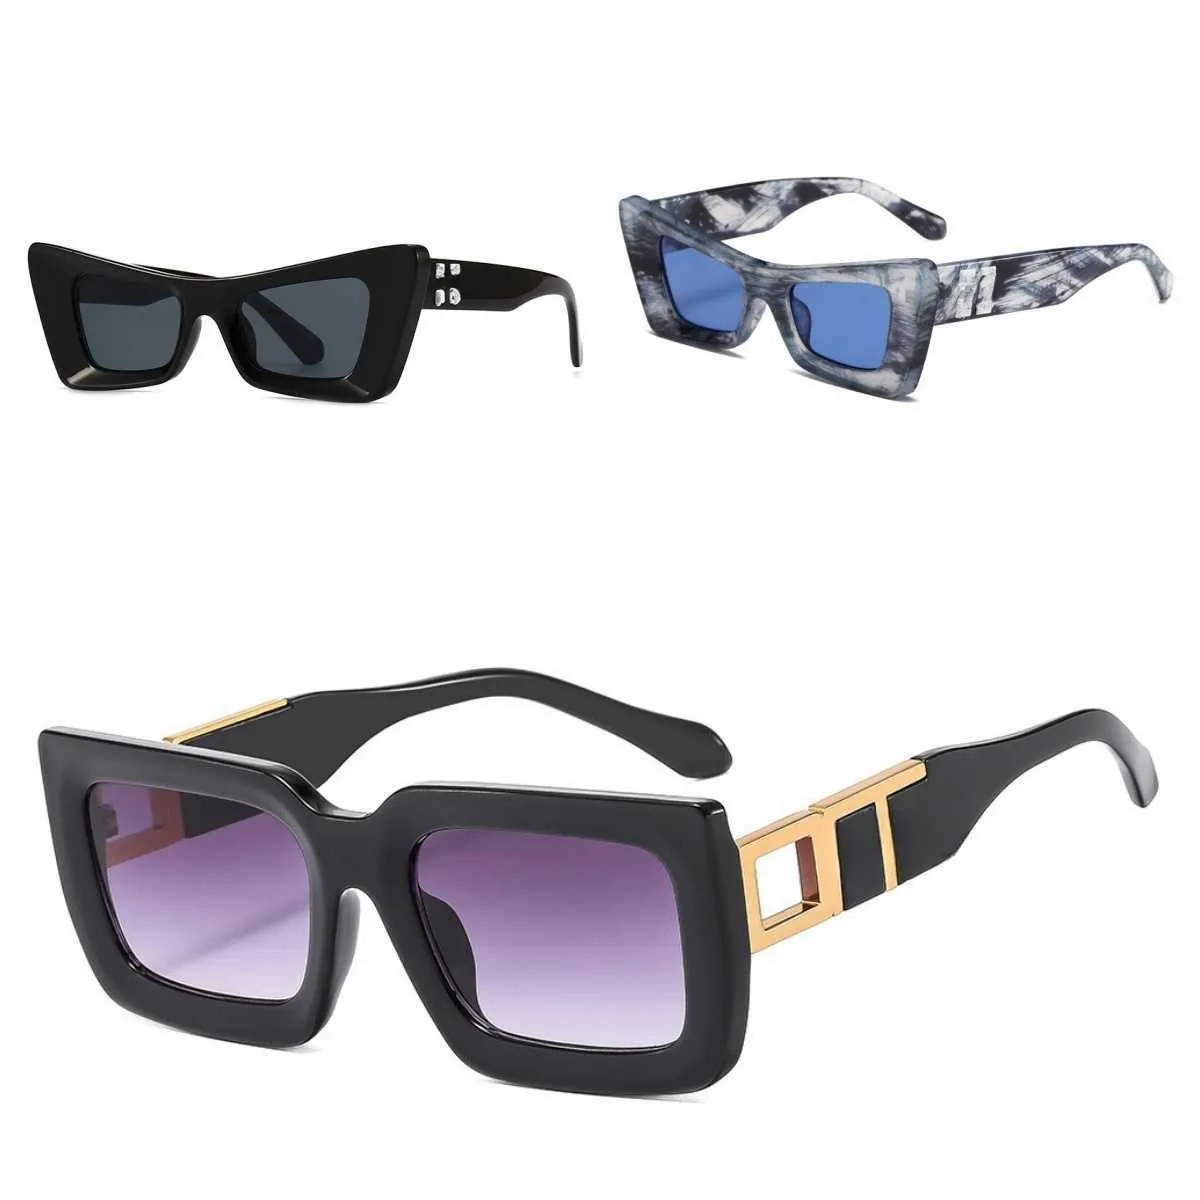 Дизайнерские солнцезащитные очки для мужчин и женщин. Новые солнцезащитные очки модного бренда. Летние супертолстые квадратные оправы с широкими дужками. Классические металлические стрелки. Женские очки для отпуска.